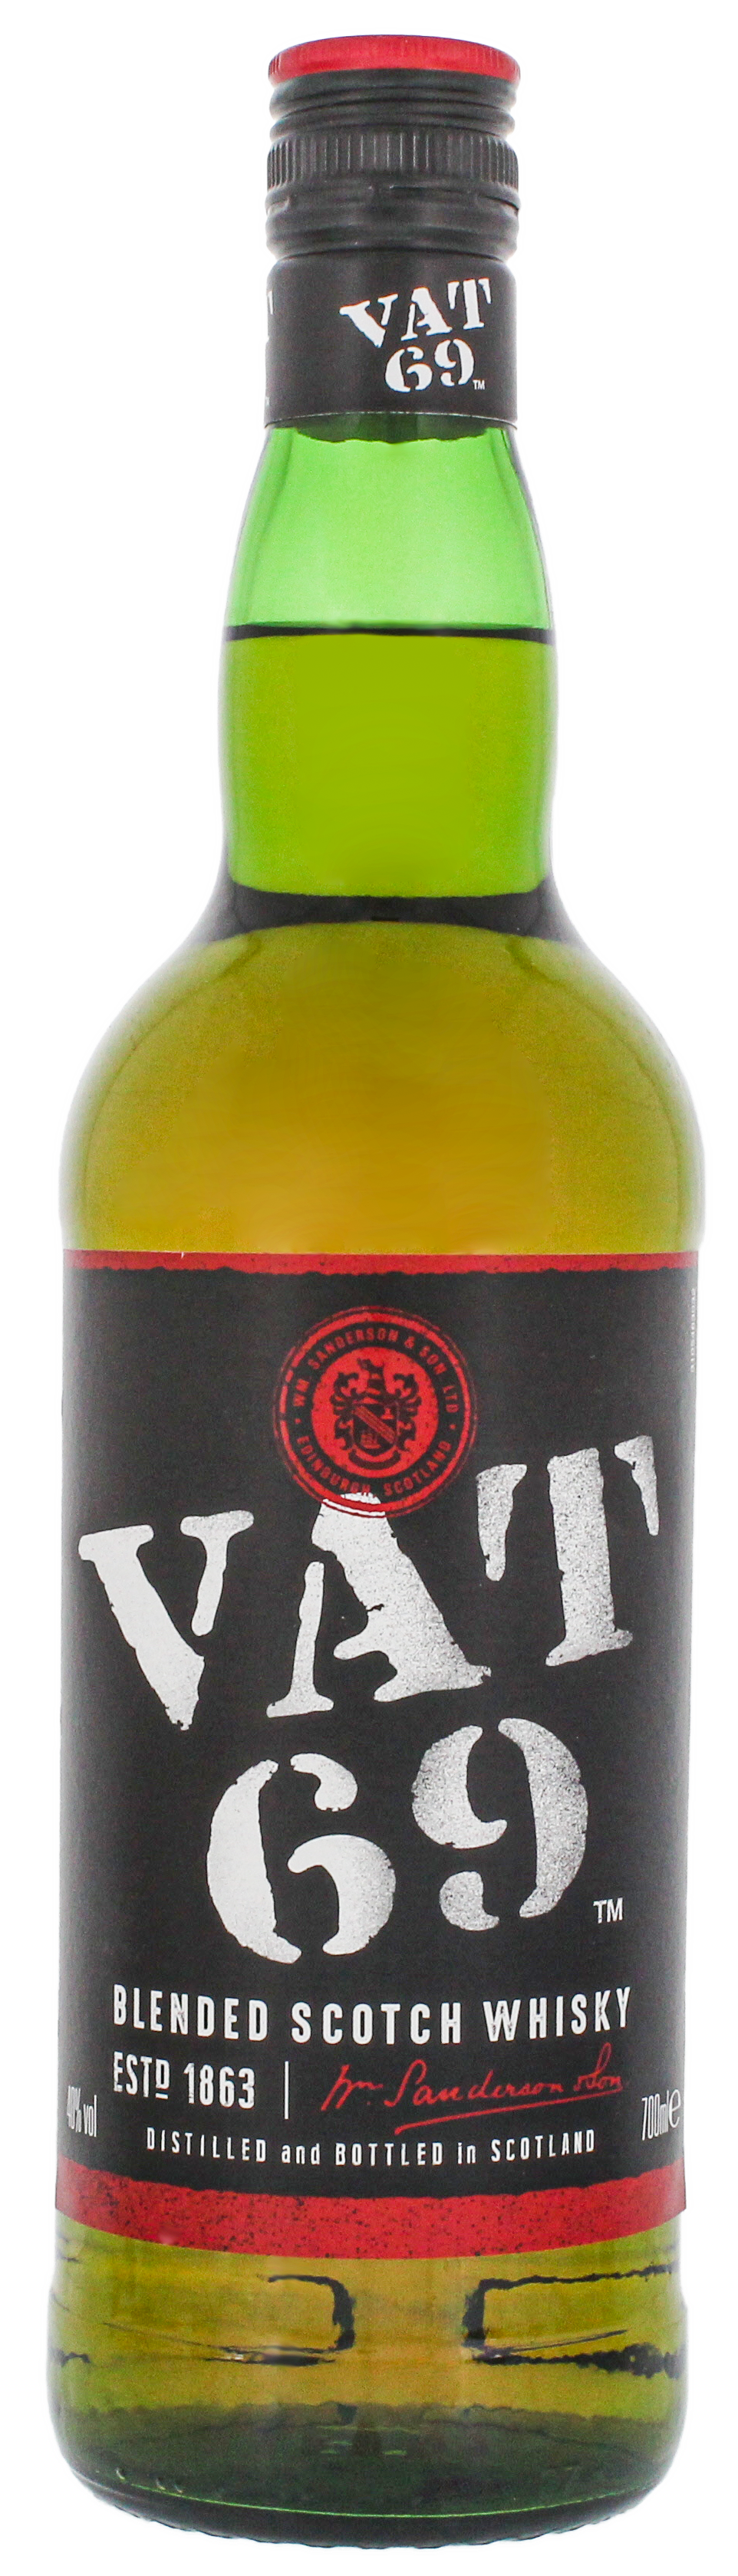 VAT 69 0,7L blended scotch whisky jetzt kaufen! Rum Online Shop   Spirituosen